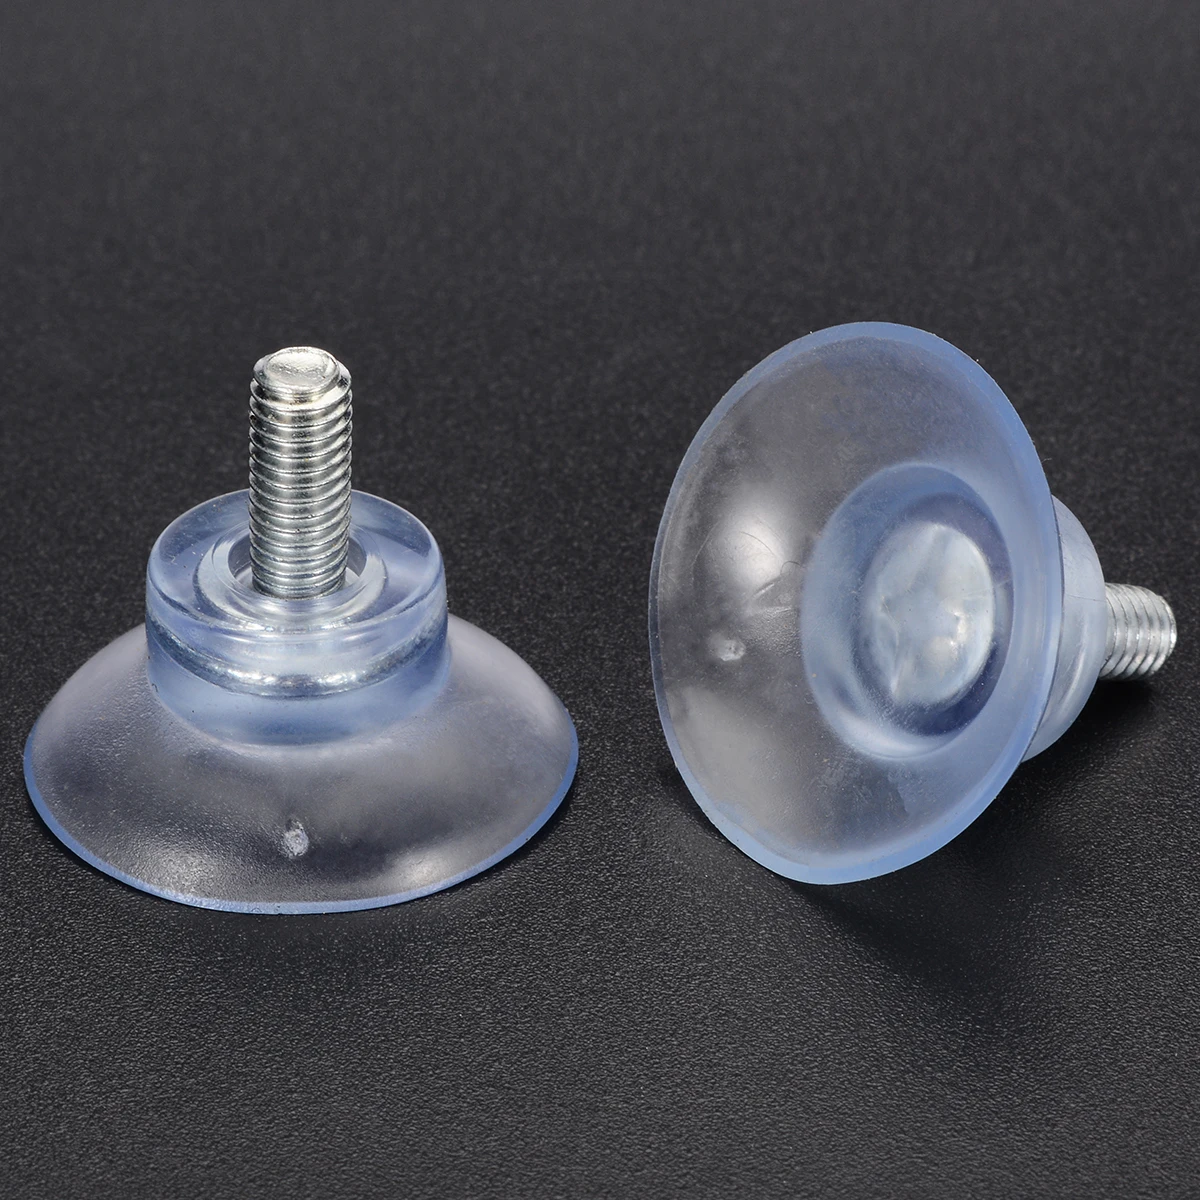 10 шт. прозрачная резиновая сильная присоска Замена для стеклянных столешниц W/M6 Винт домашняя присоска крючки